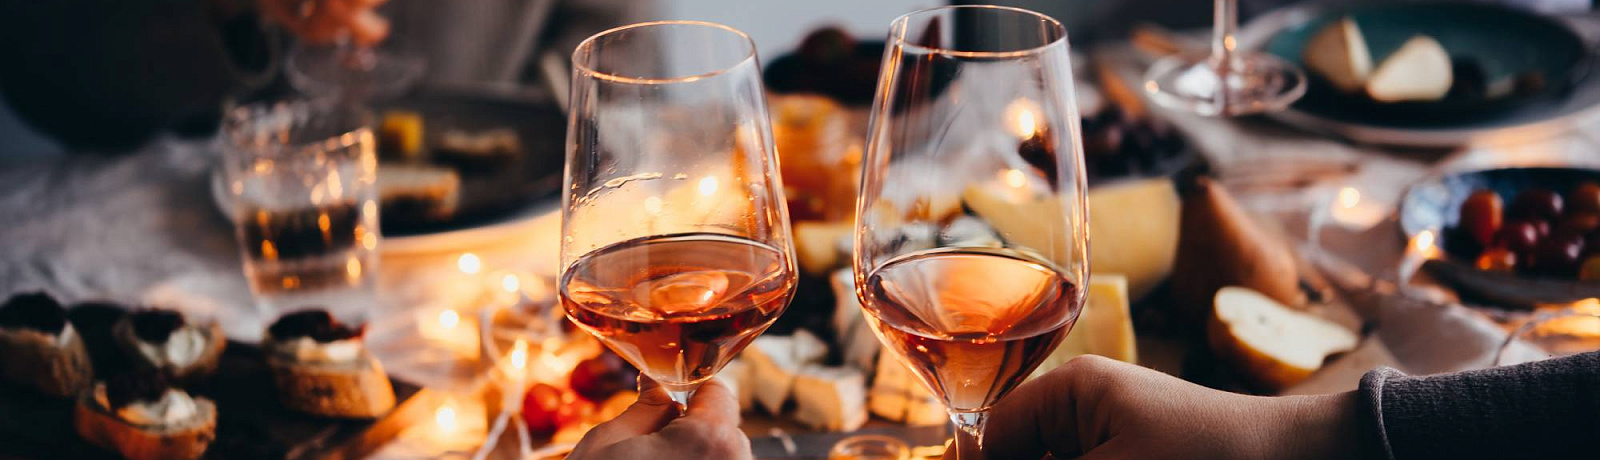 New beginning: до -30% на вино и другие напитки